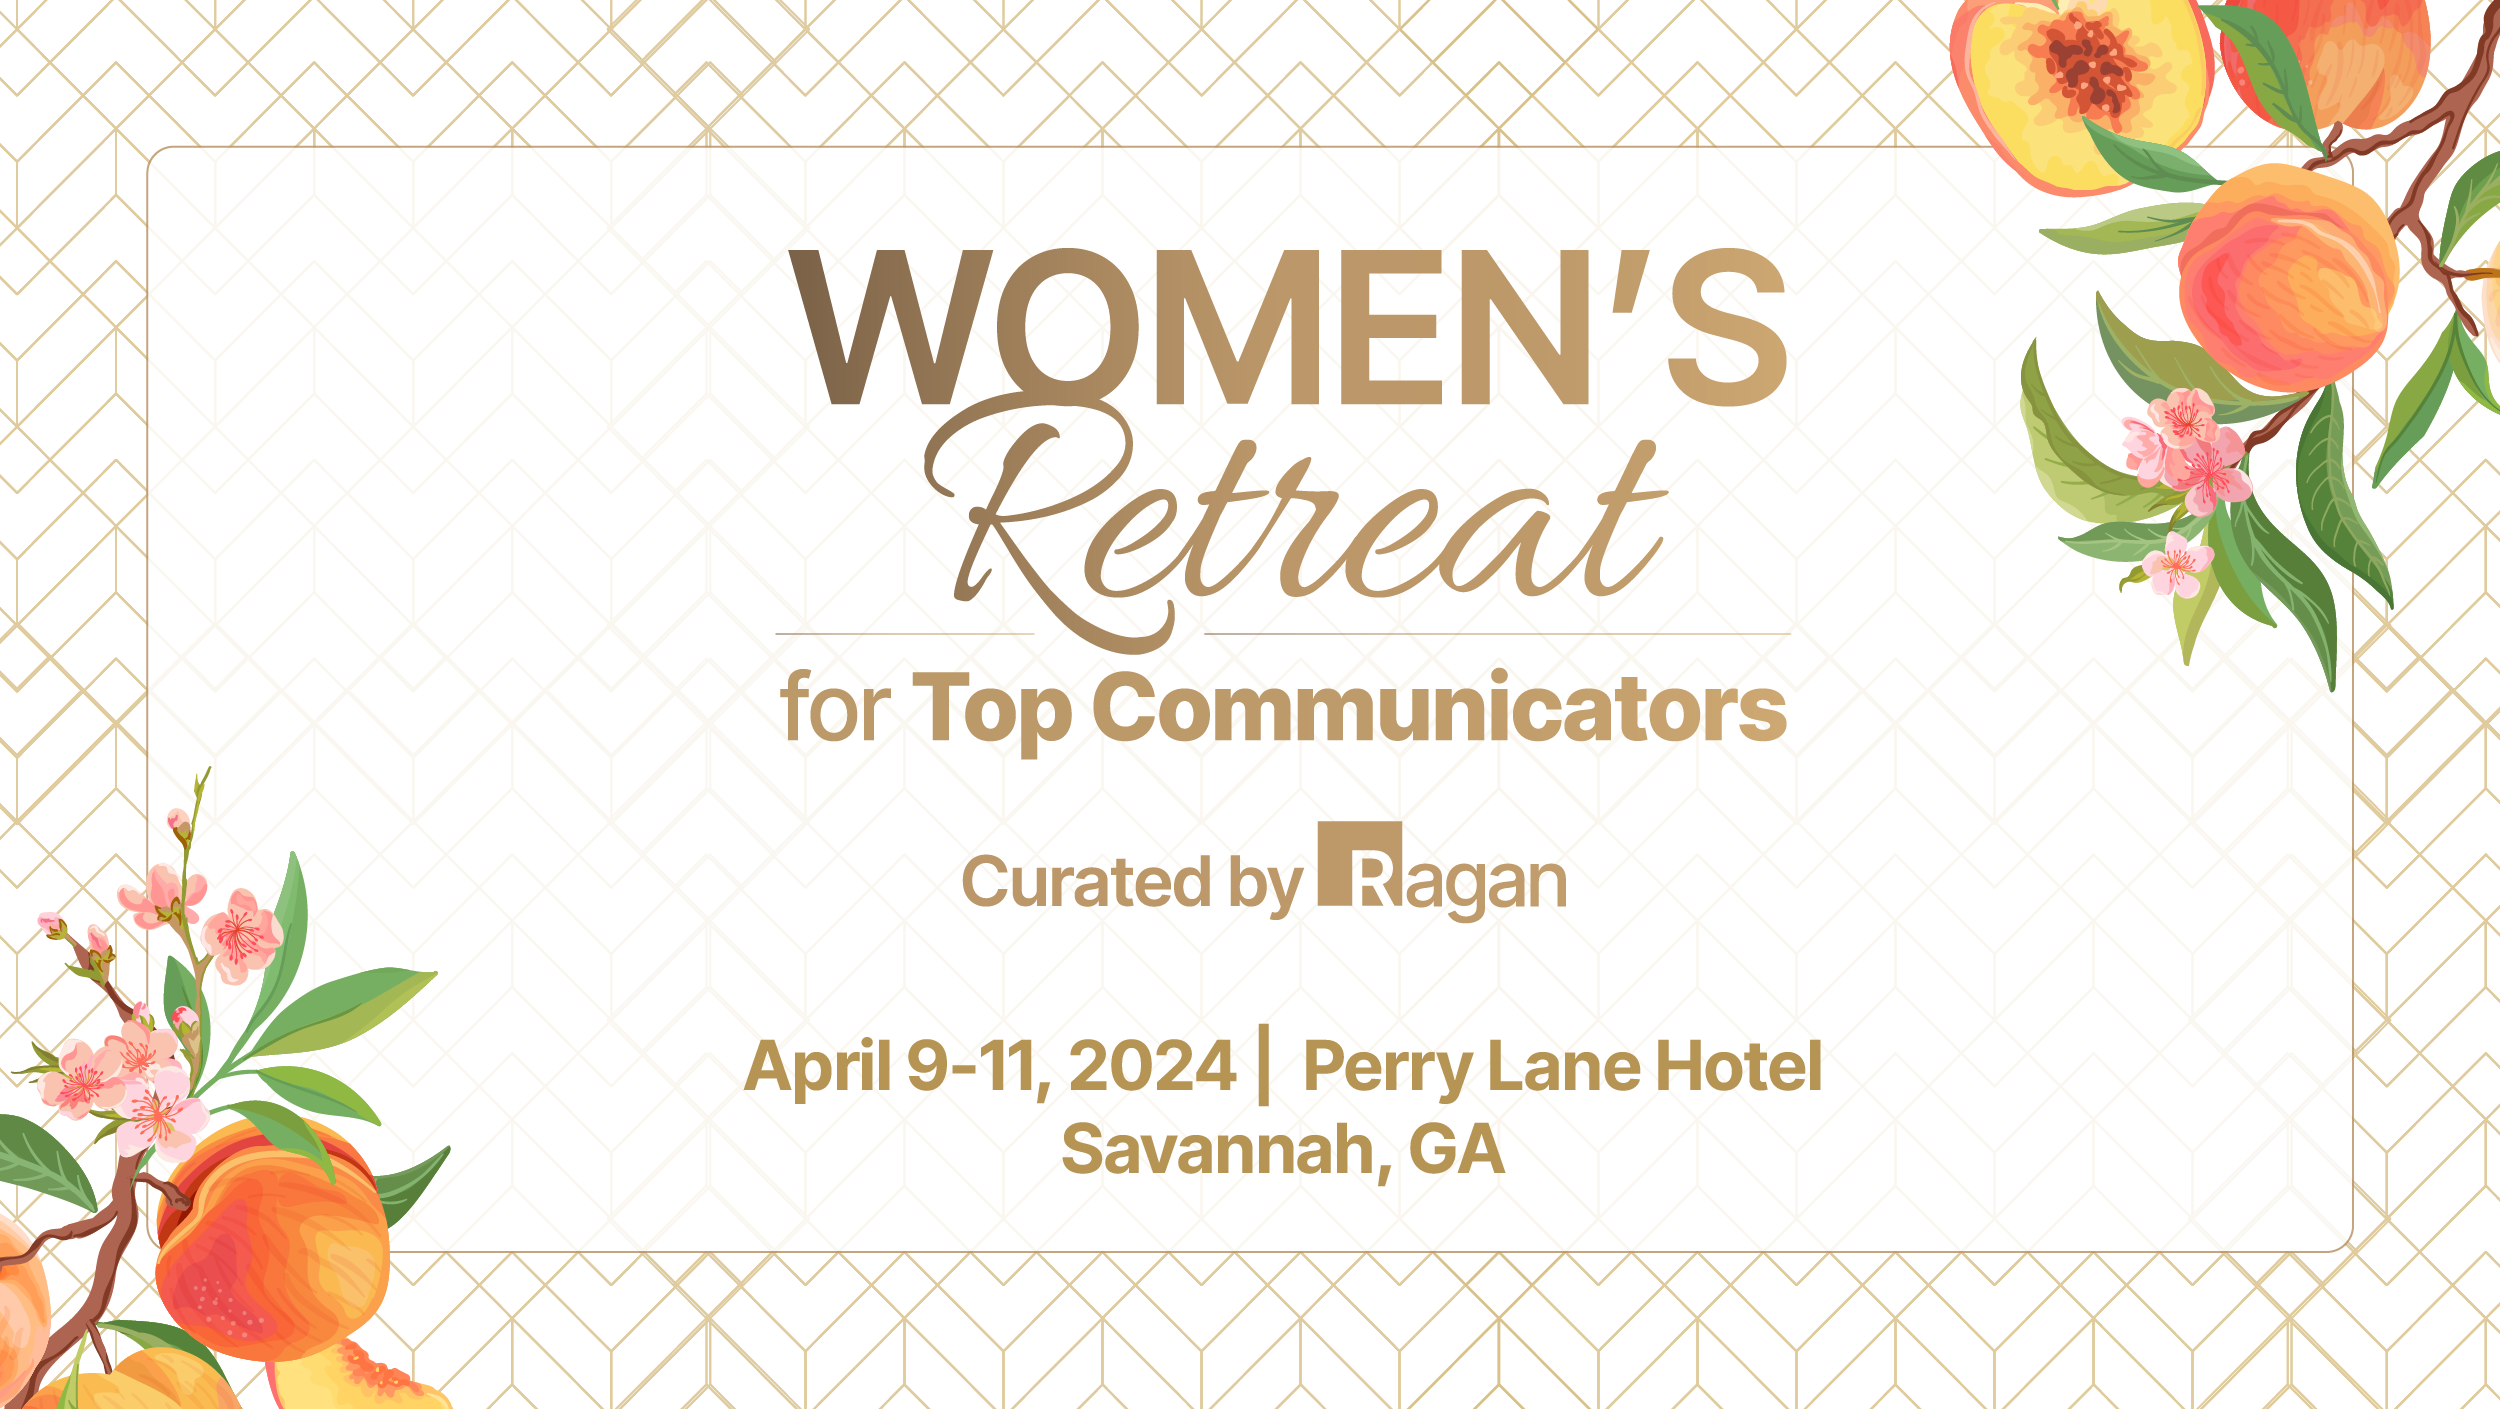 Presentation Handouts For: WOMENRT040924 - Women’s Retreat for Communicators April 2024